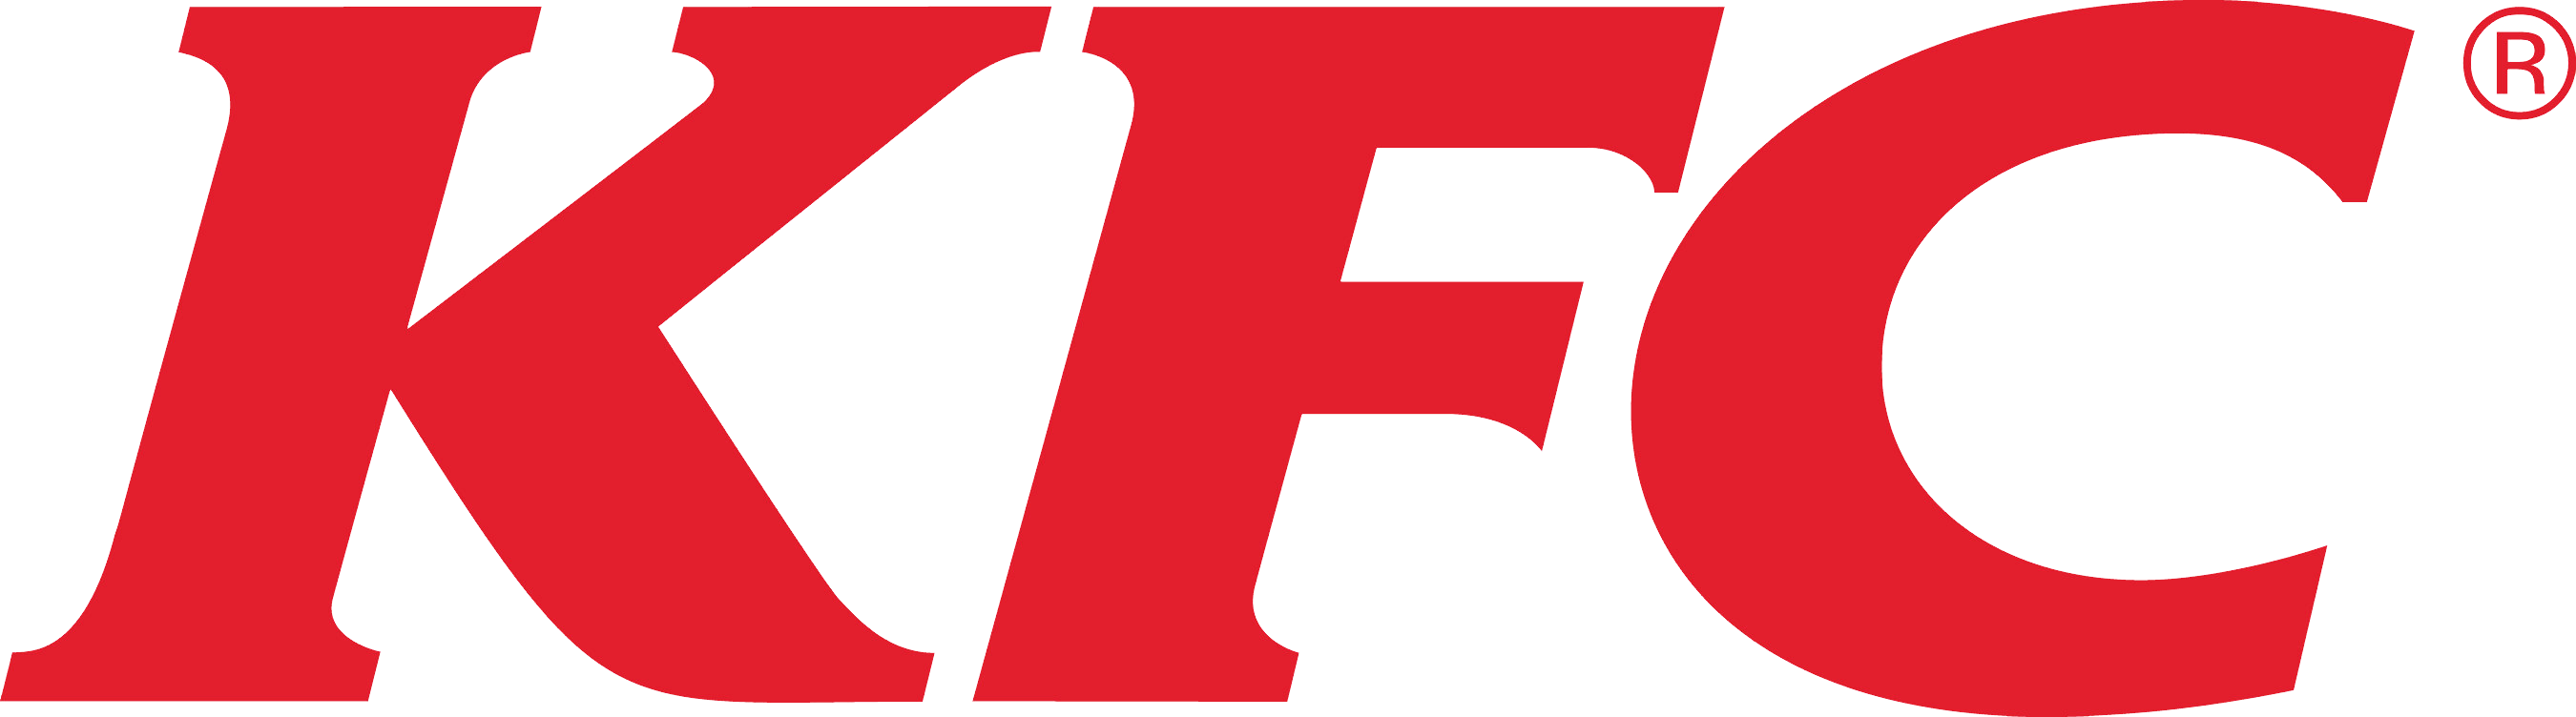 Kfc Logo PNG File